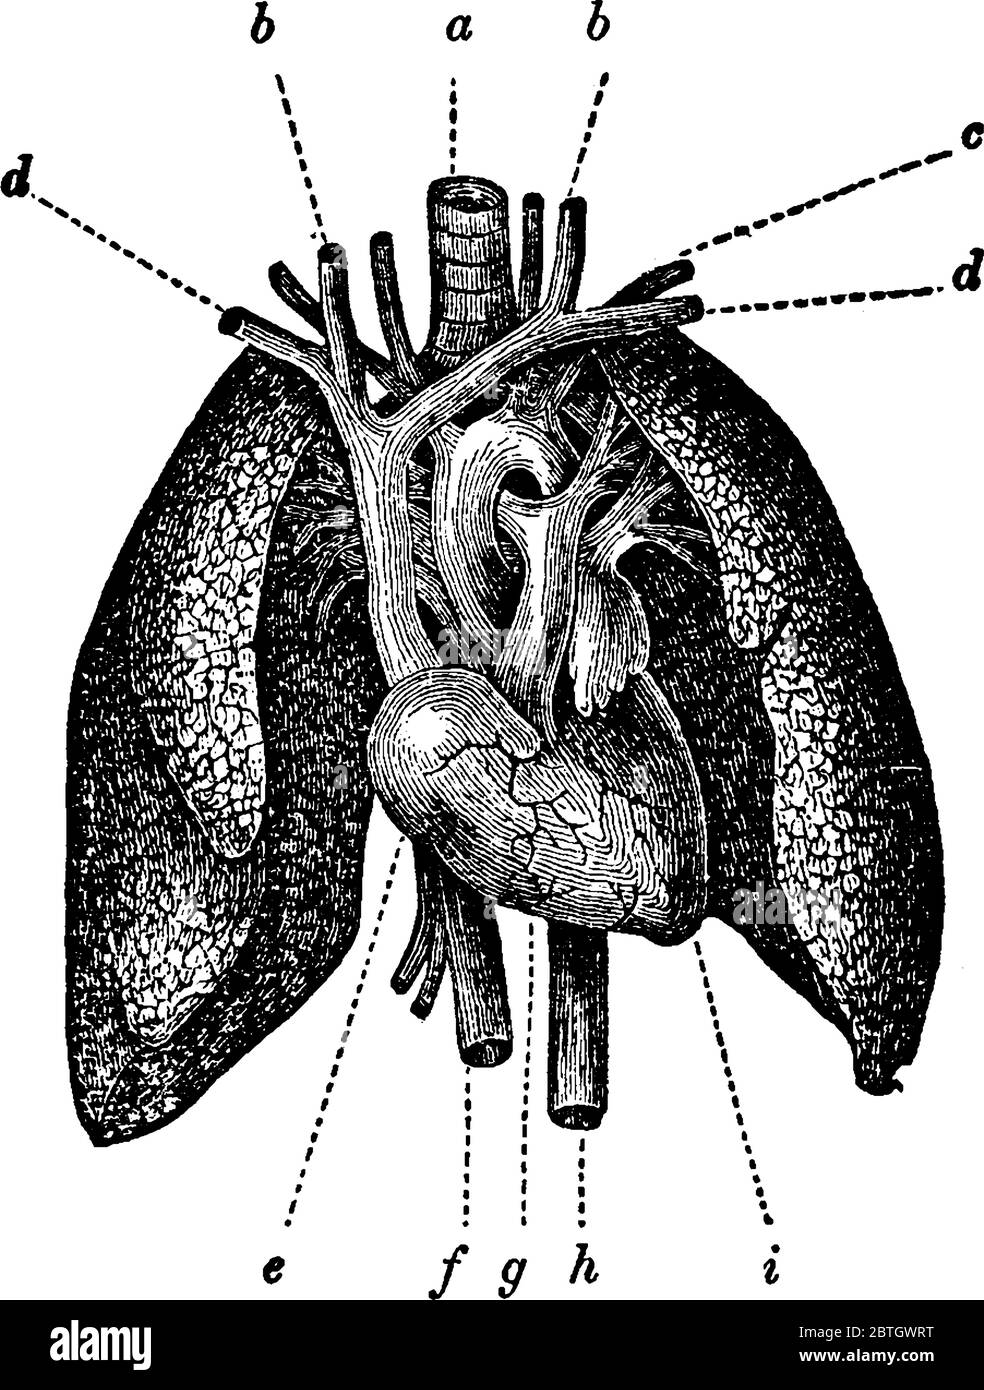 Komplette Anatomie des Herzens und der Lunge des Menschen, Vintage-Strichzeichnung oder Gravur Illustration. Stock Vektor